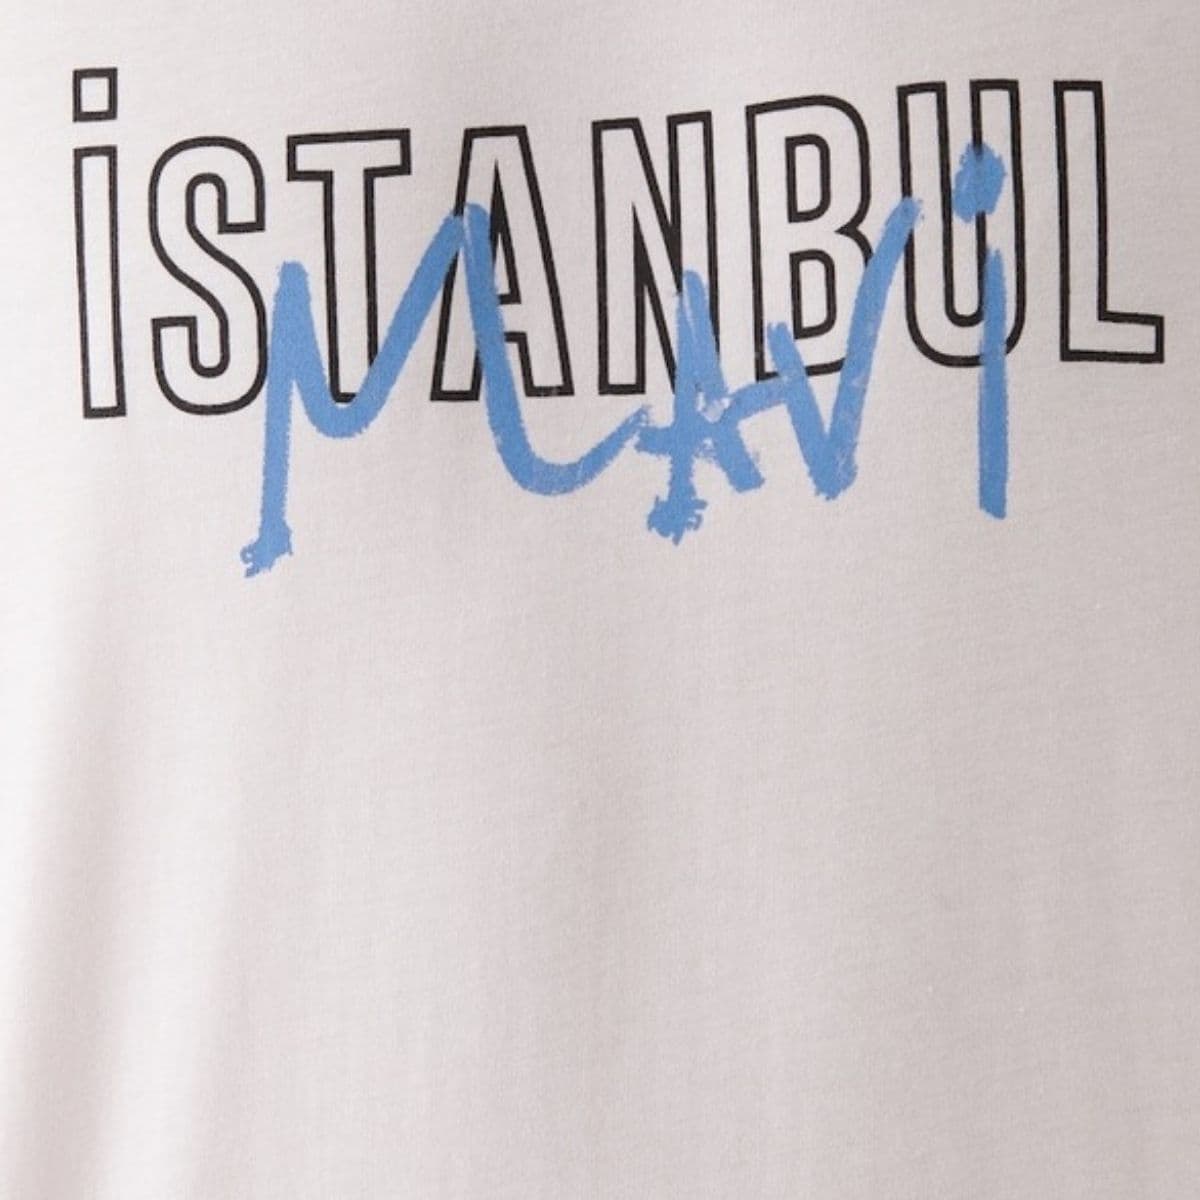 Mavi İstanbul Baskılı Erkek Beyaz Tişört (067114-620)